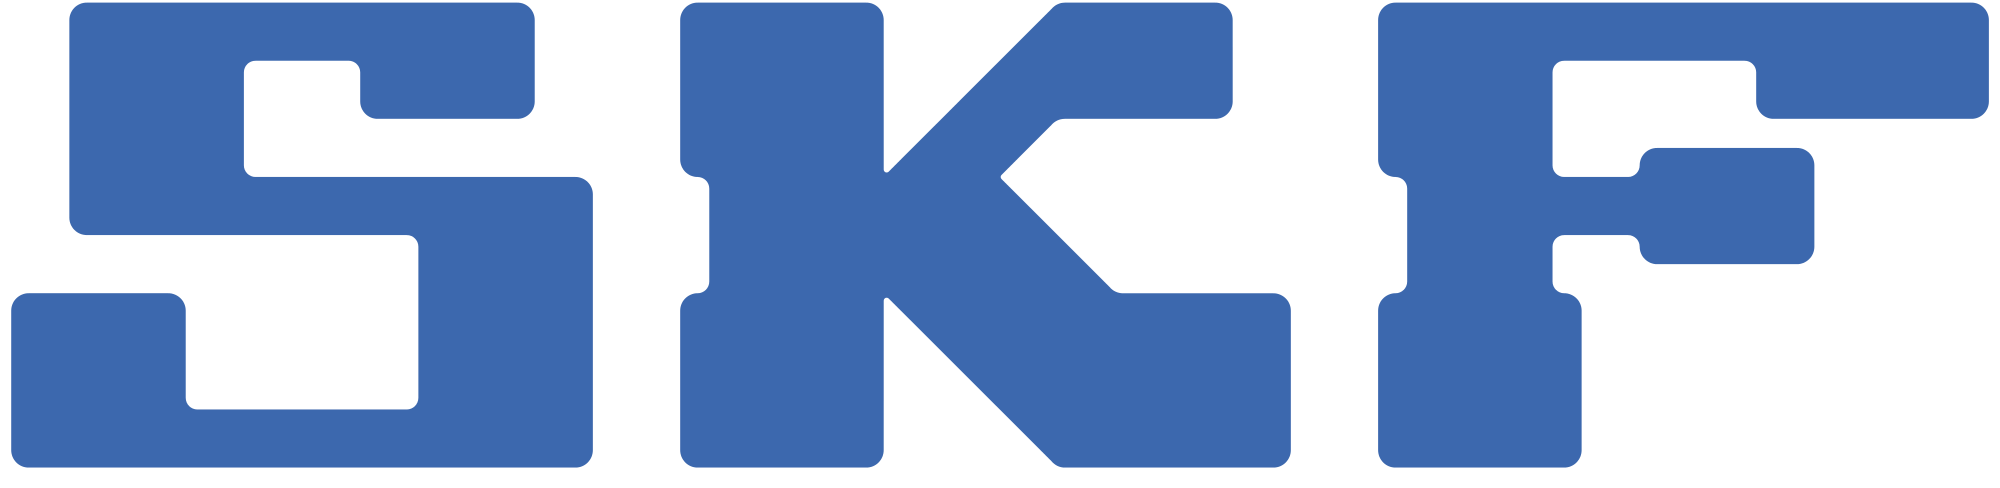 logo_skf2